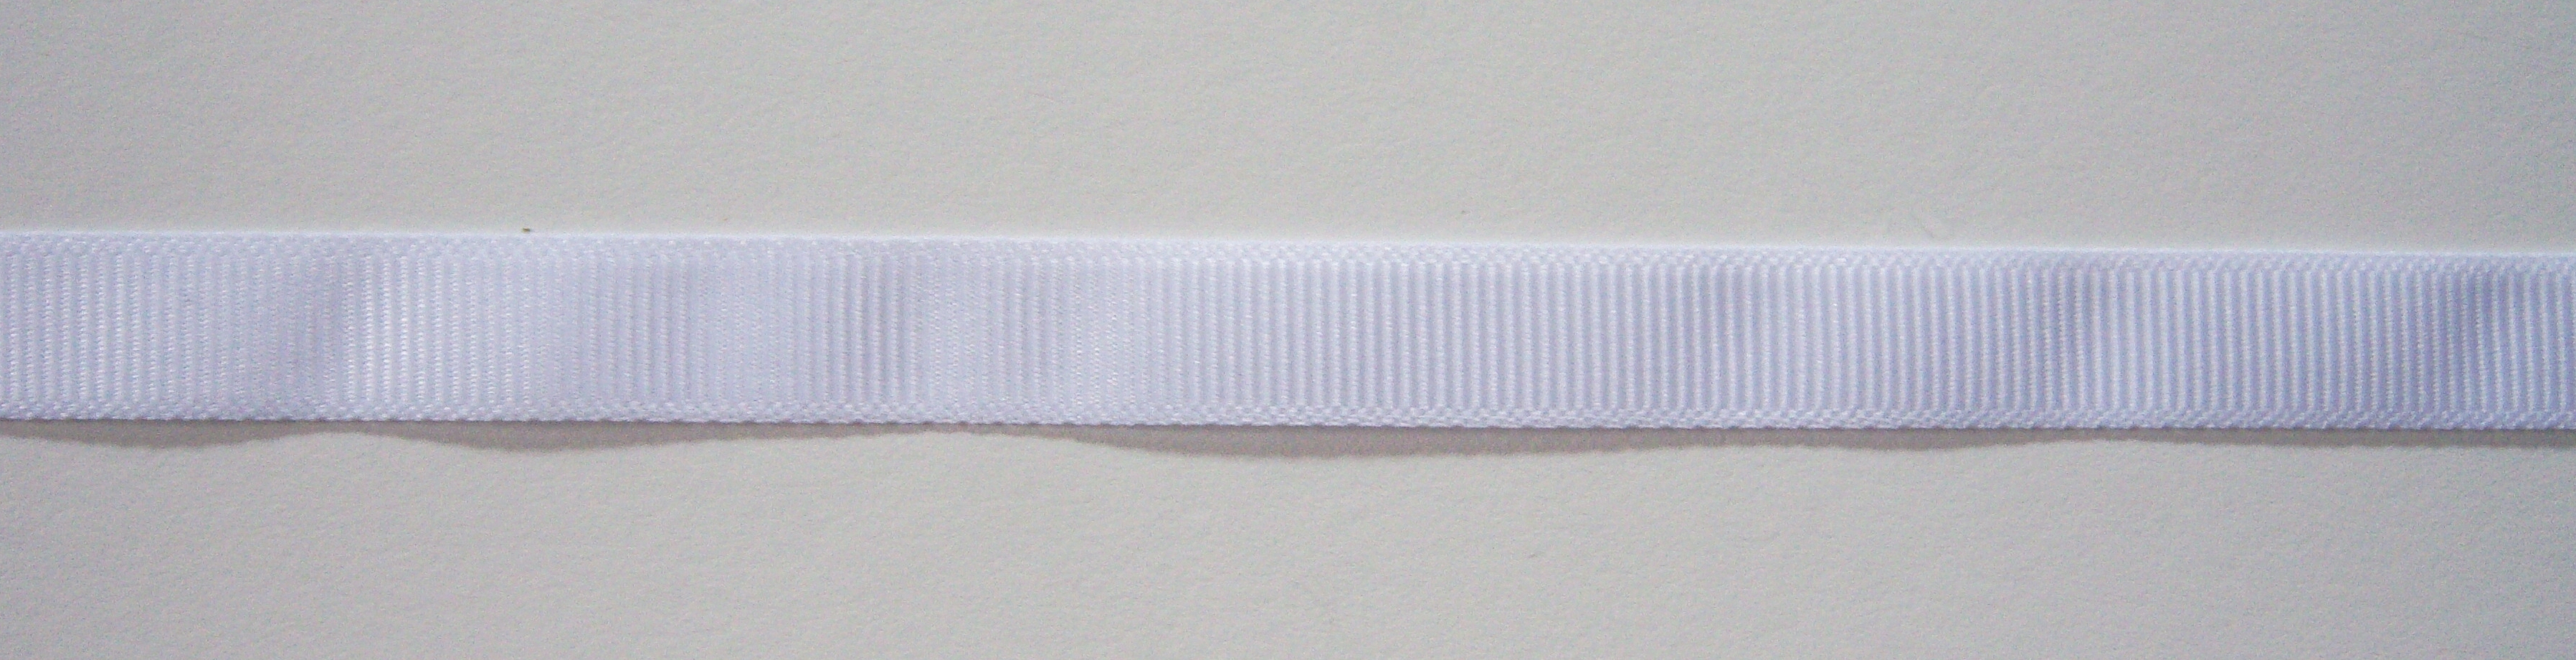 White 3/8" Grosgrain Ribbon